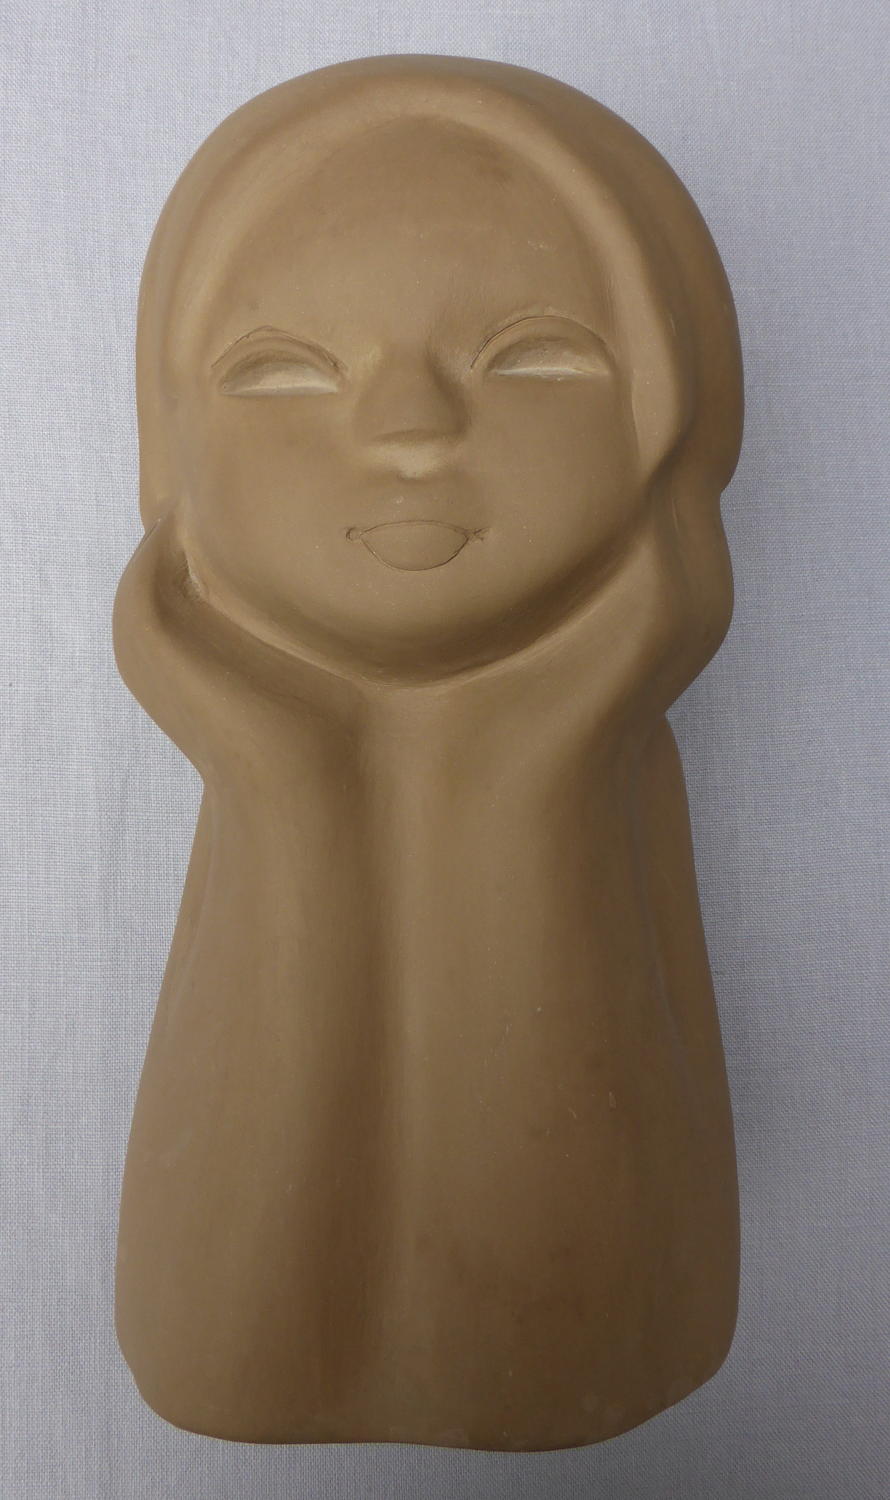 1960s Russian Tekt sculptural ceramic bust